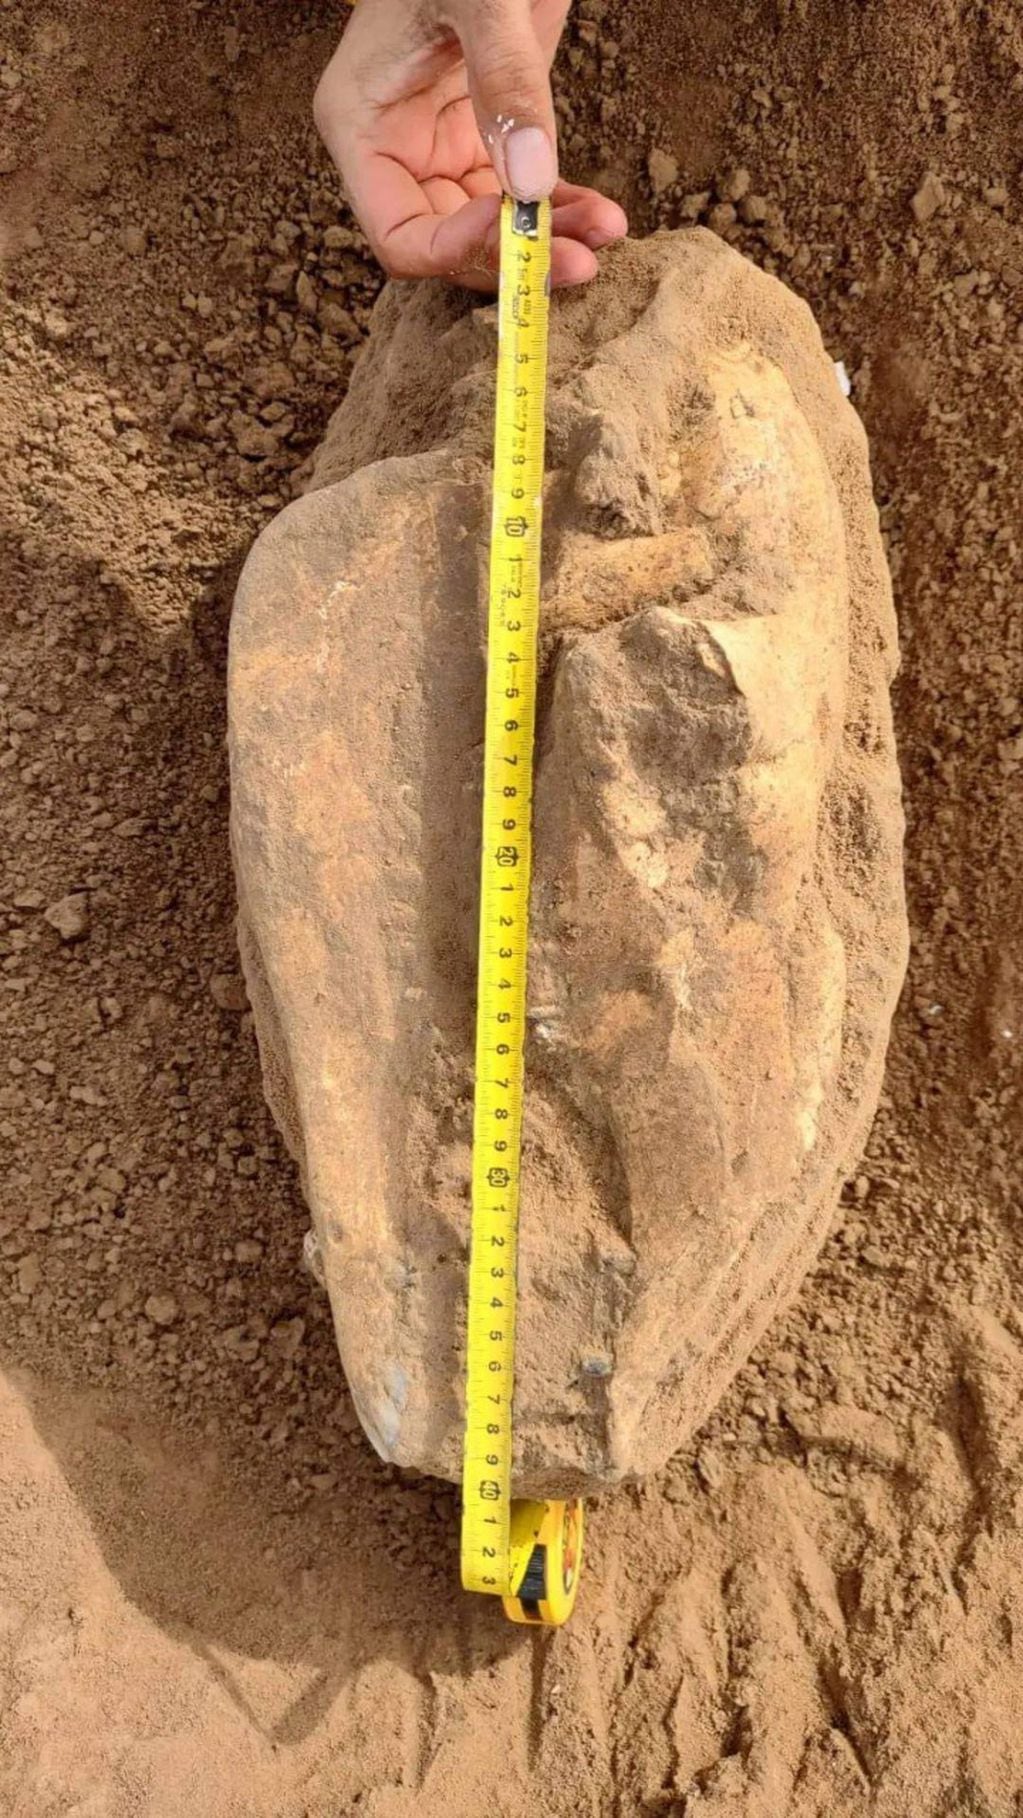 Según especialistas: "El hallazgo es muy importante y no se tiene registros paleontológicos en la zona de un cráneo tan completo"